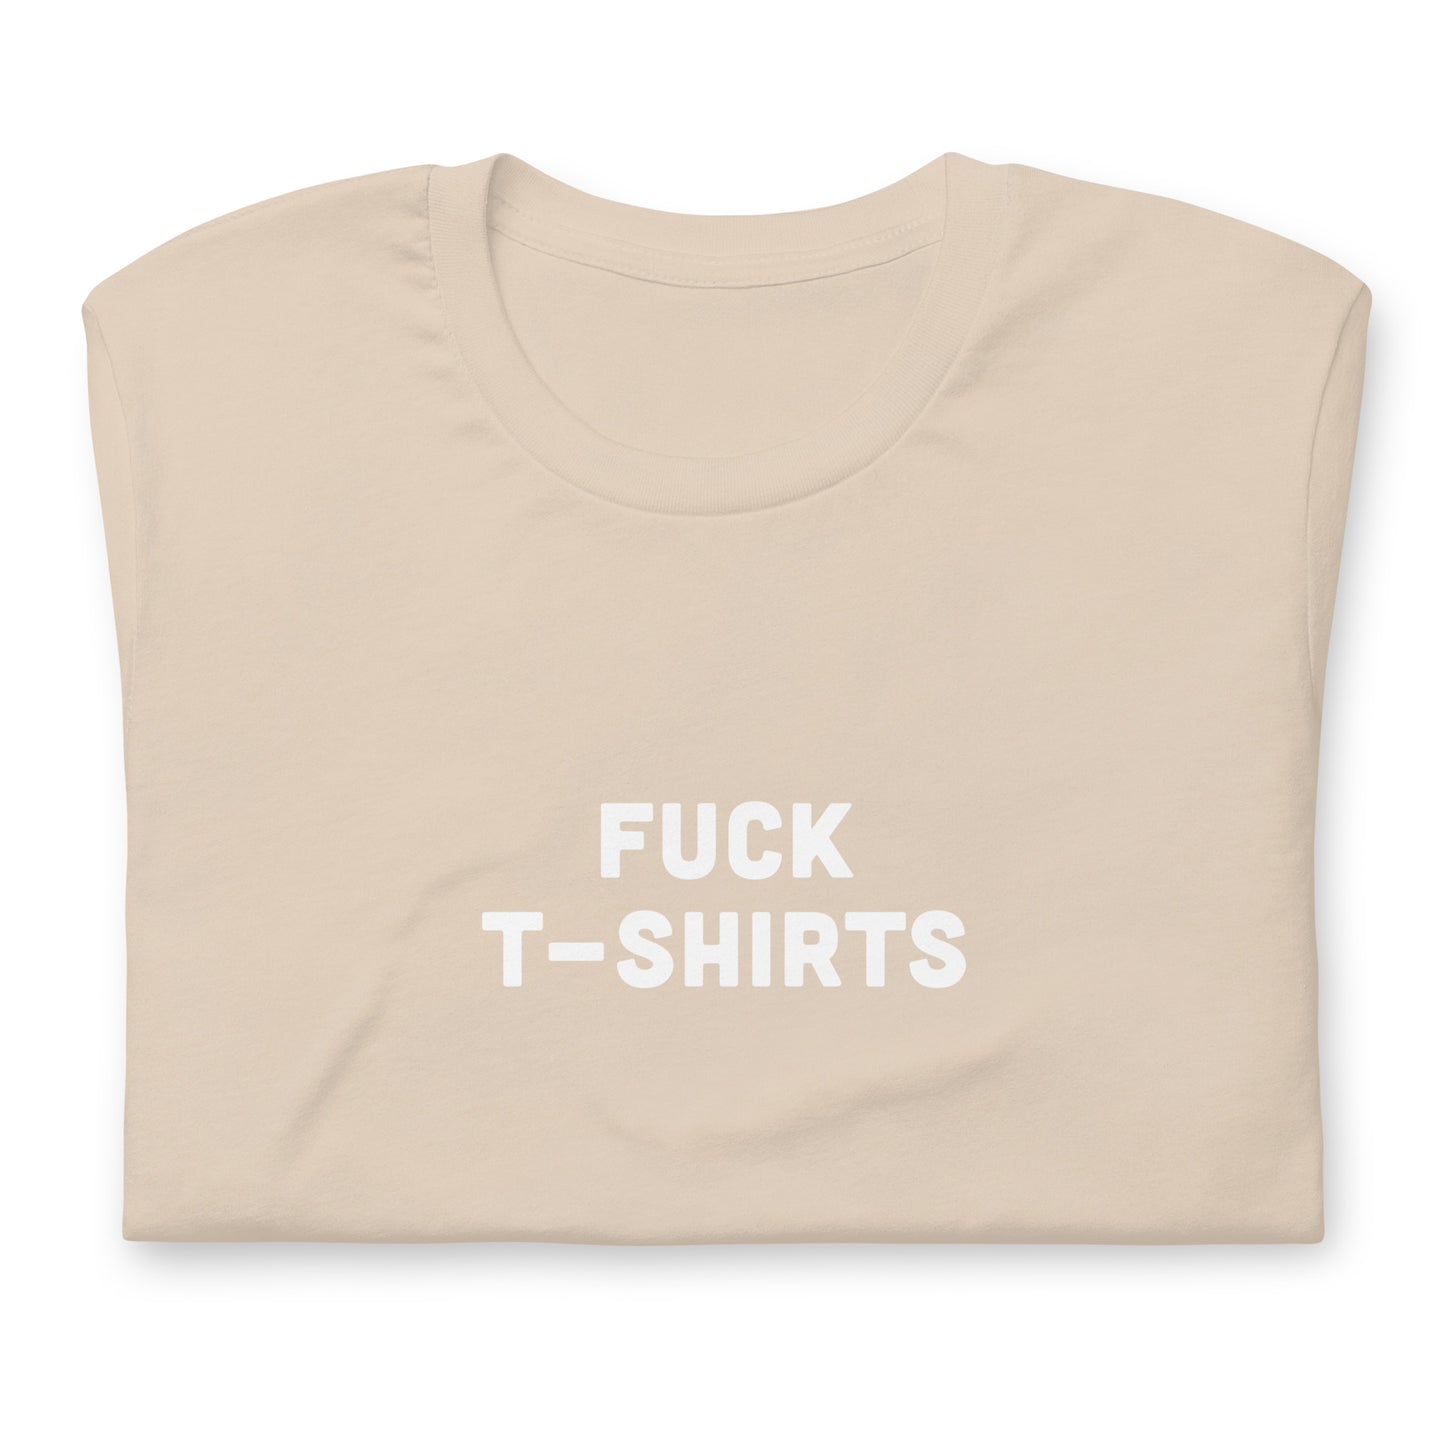 Fuck T-Shirts T-Shirt Size L Color Asphalt